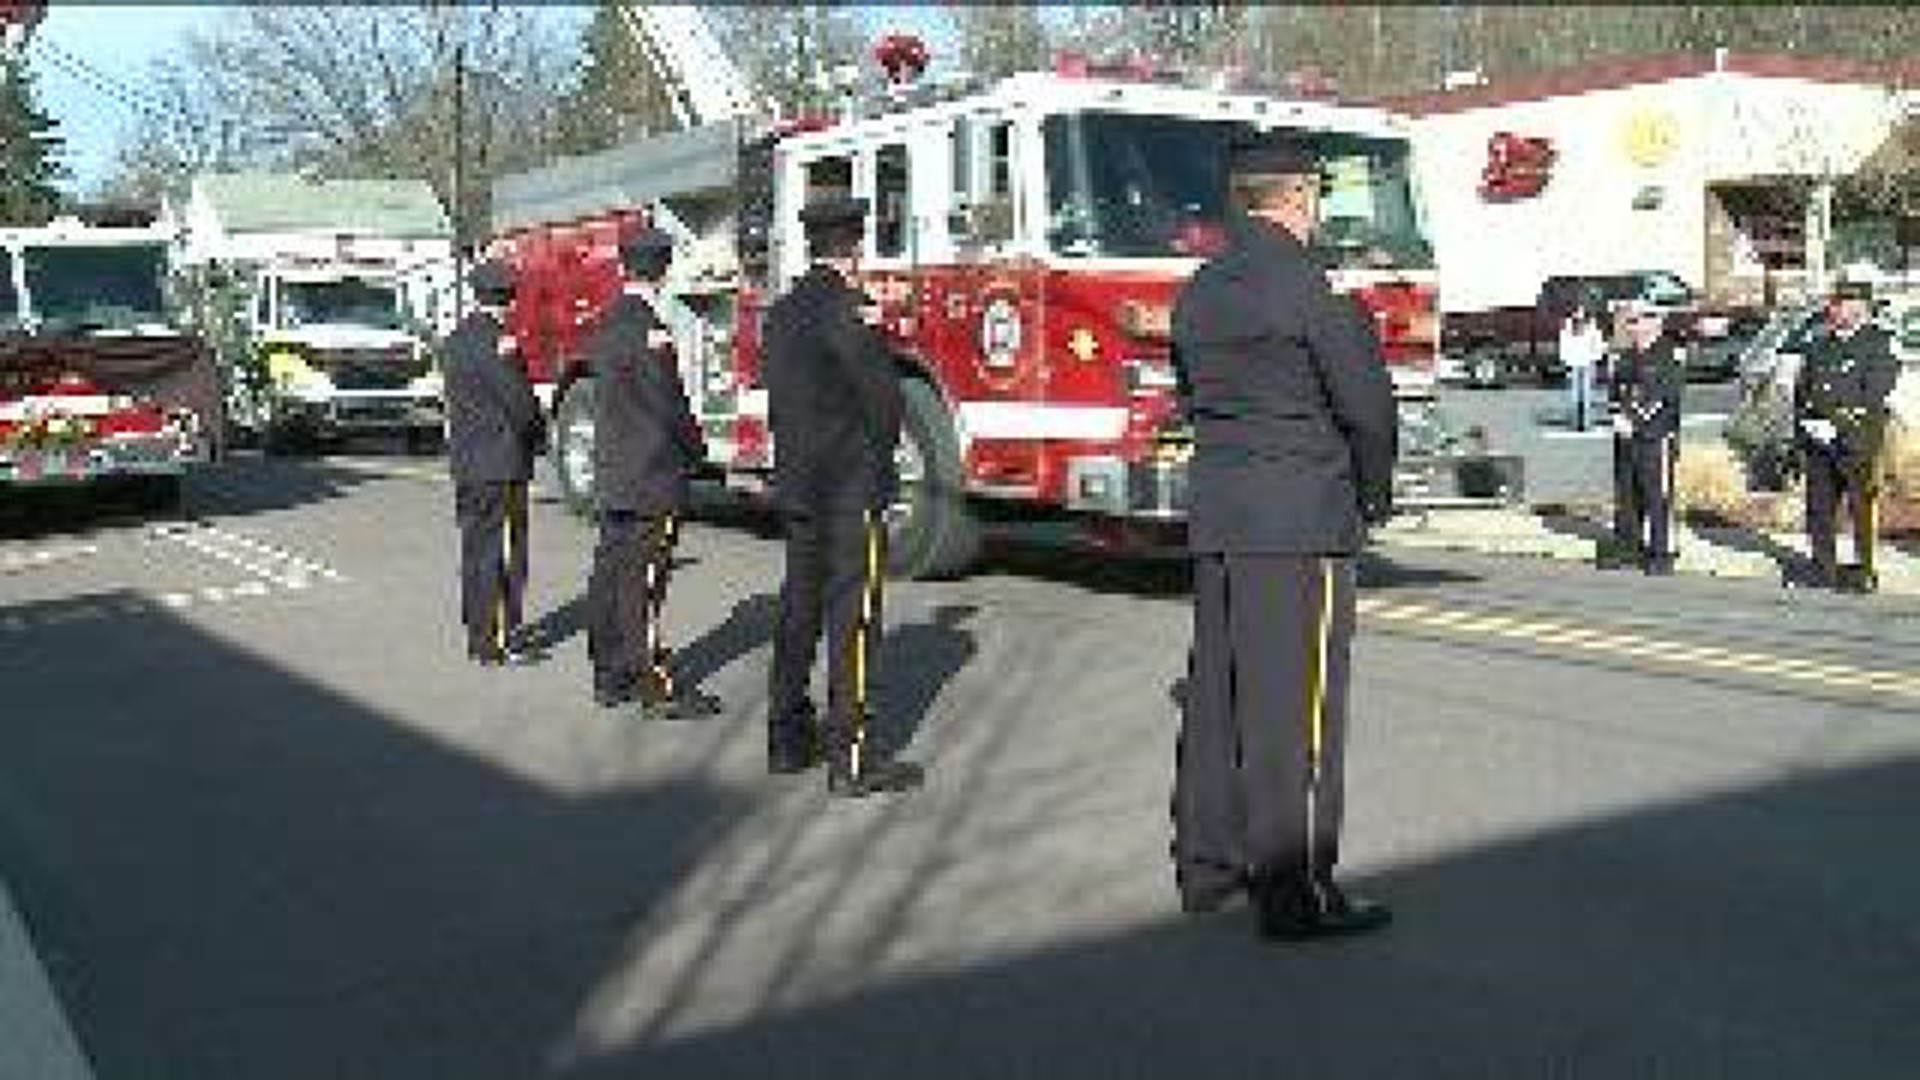 Community Bids Farewell To Fallen Firefighter